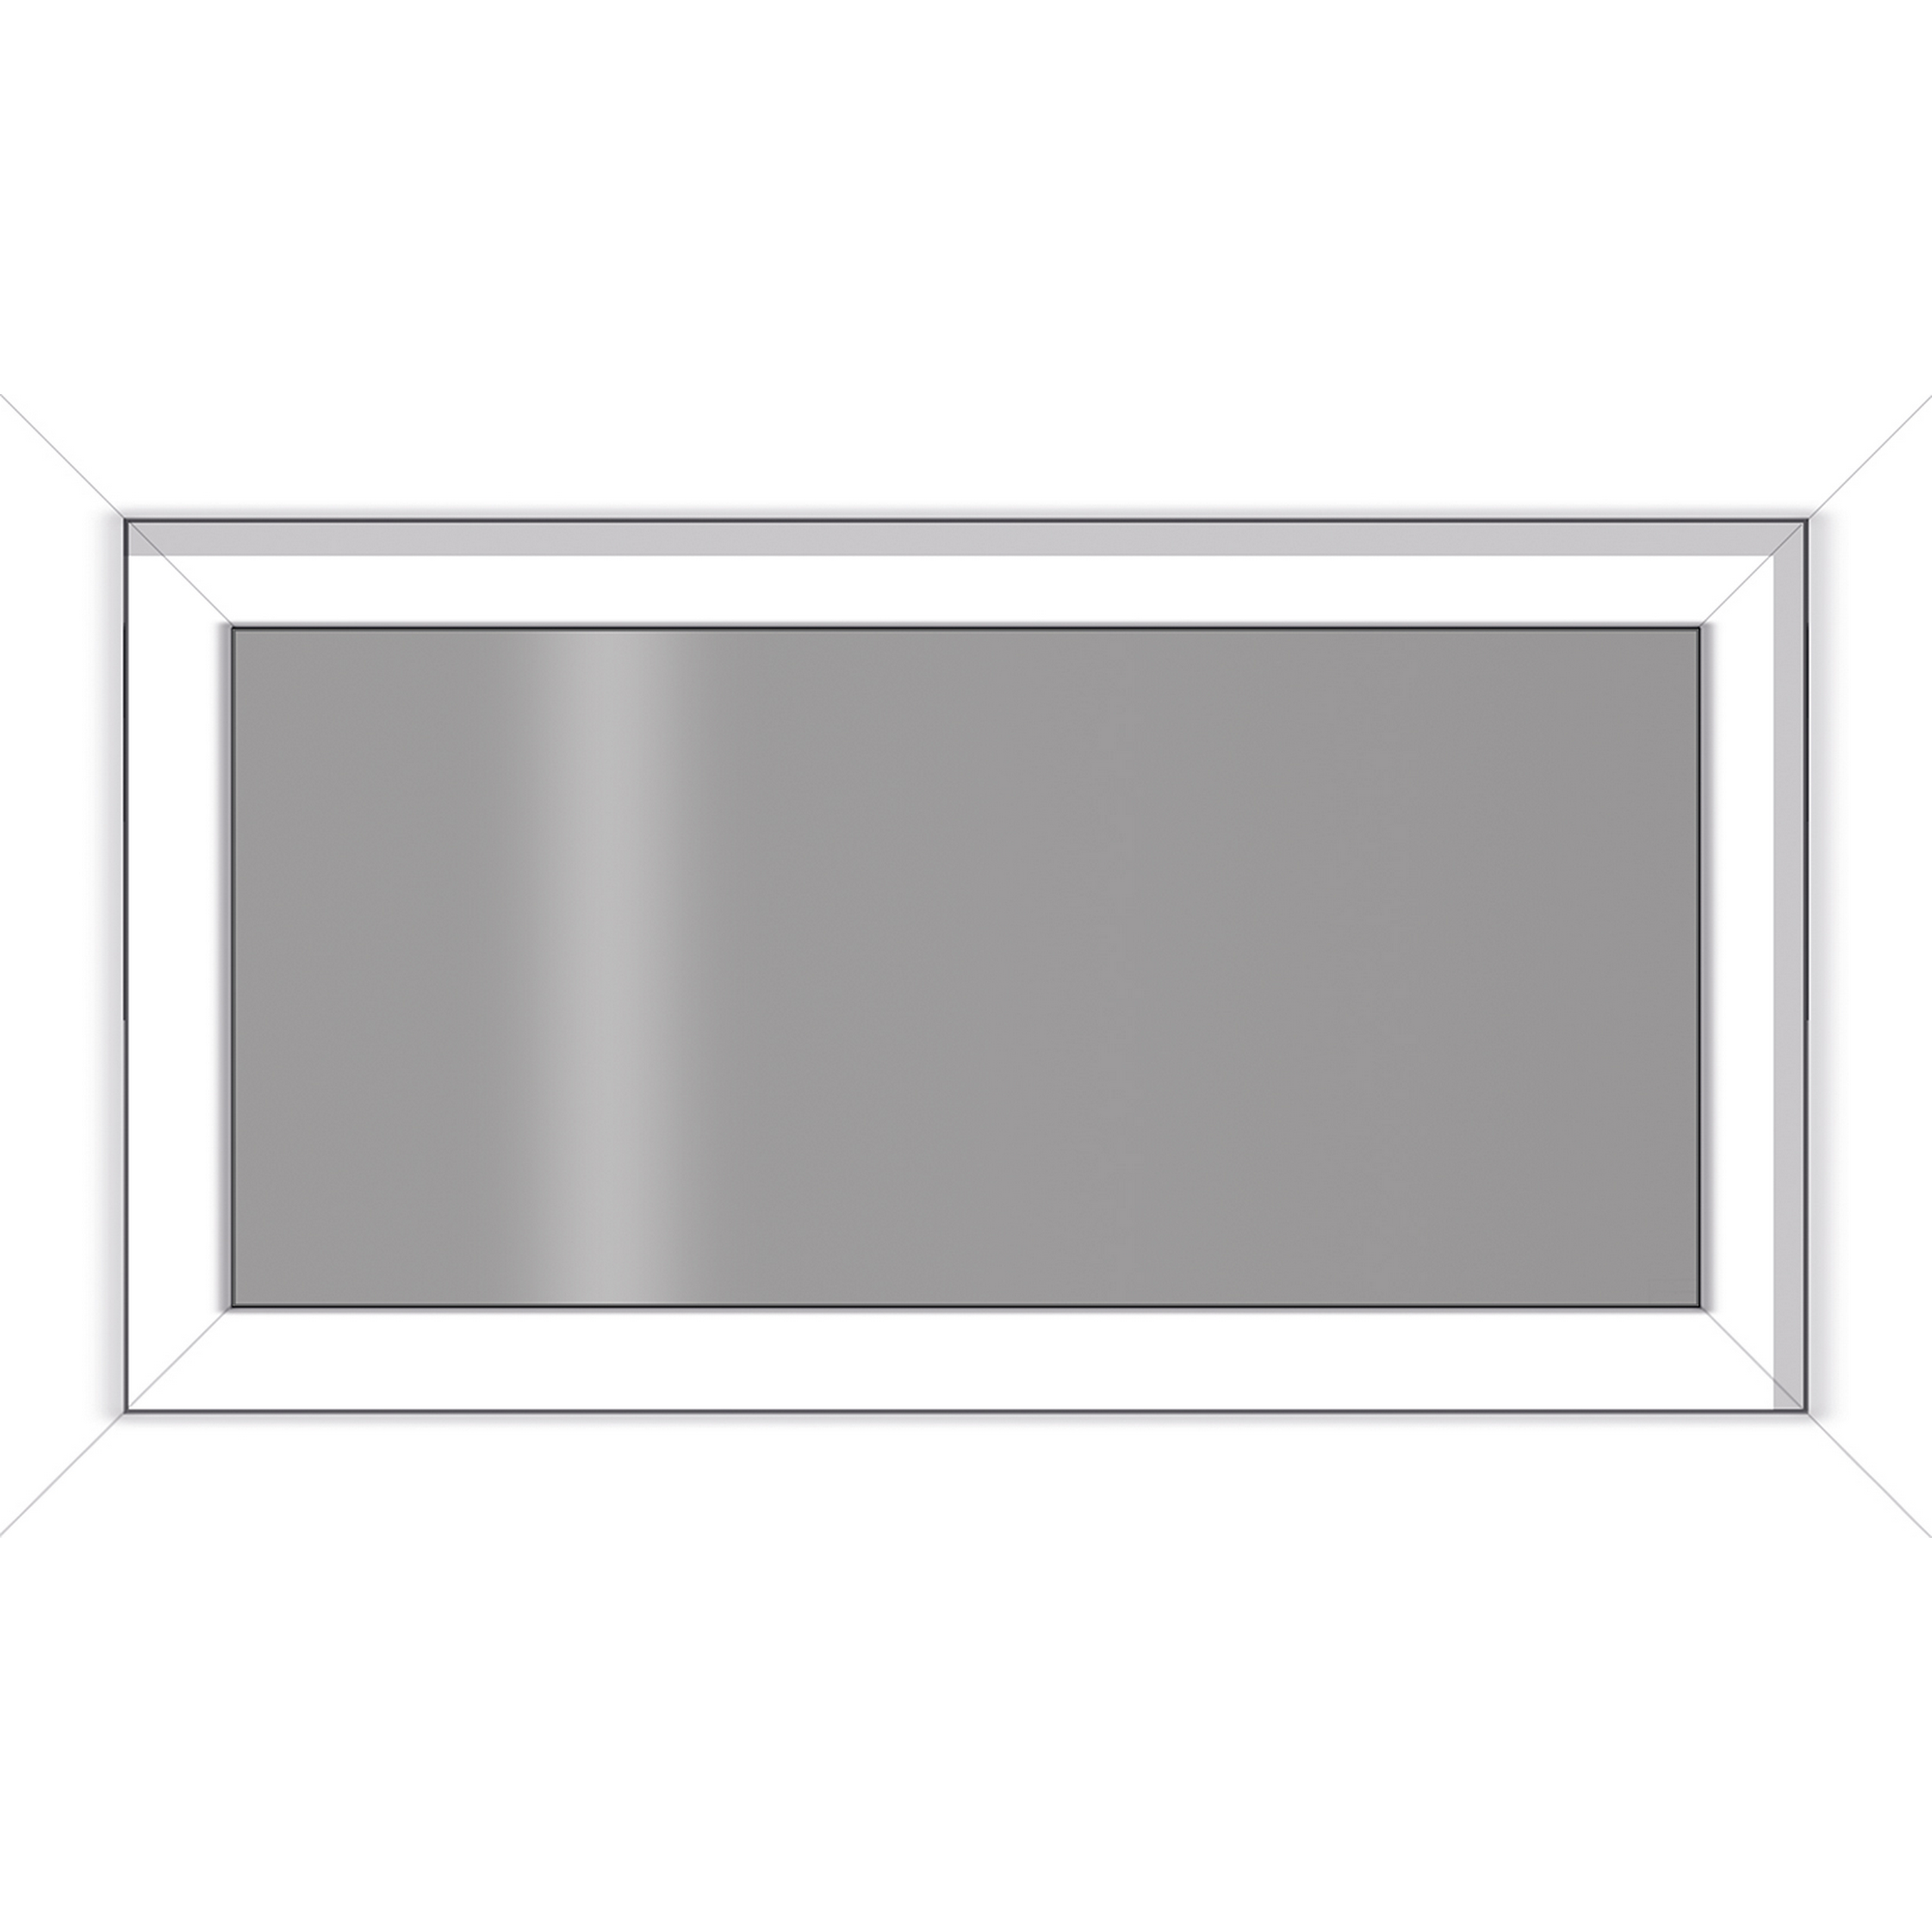 Kunststofffenster weiß 100 x 60 cm, 3-fach Verglasung + product picture